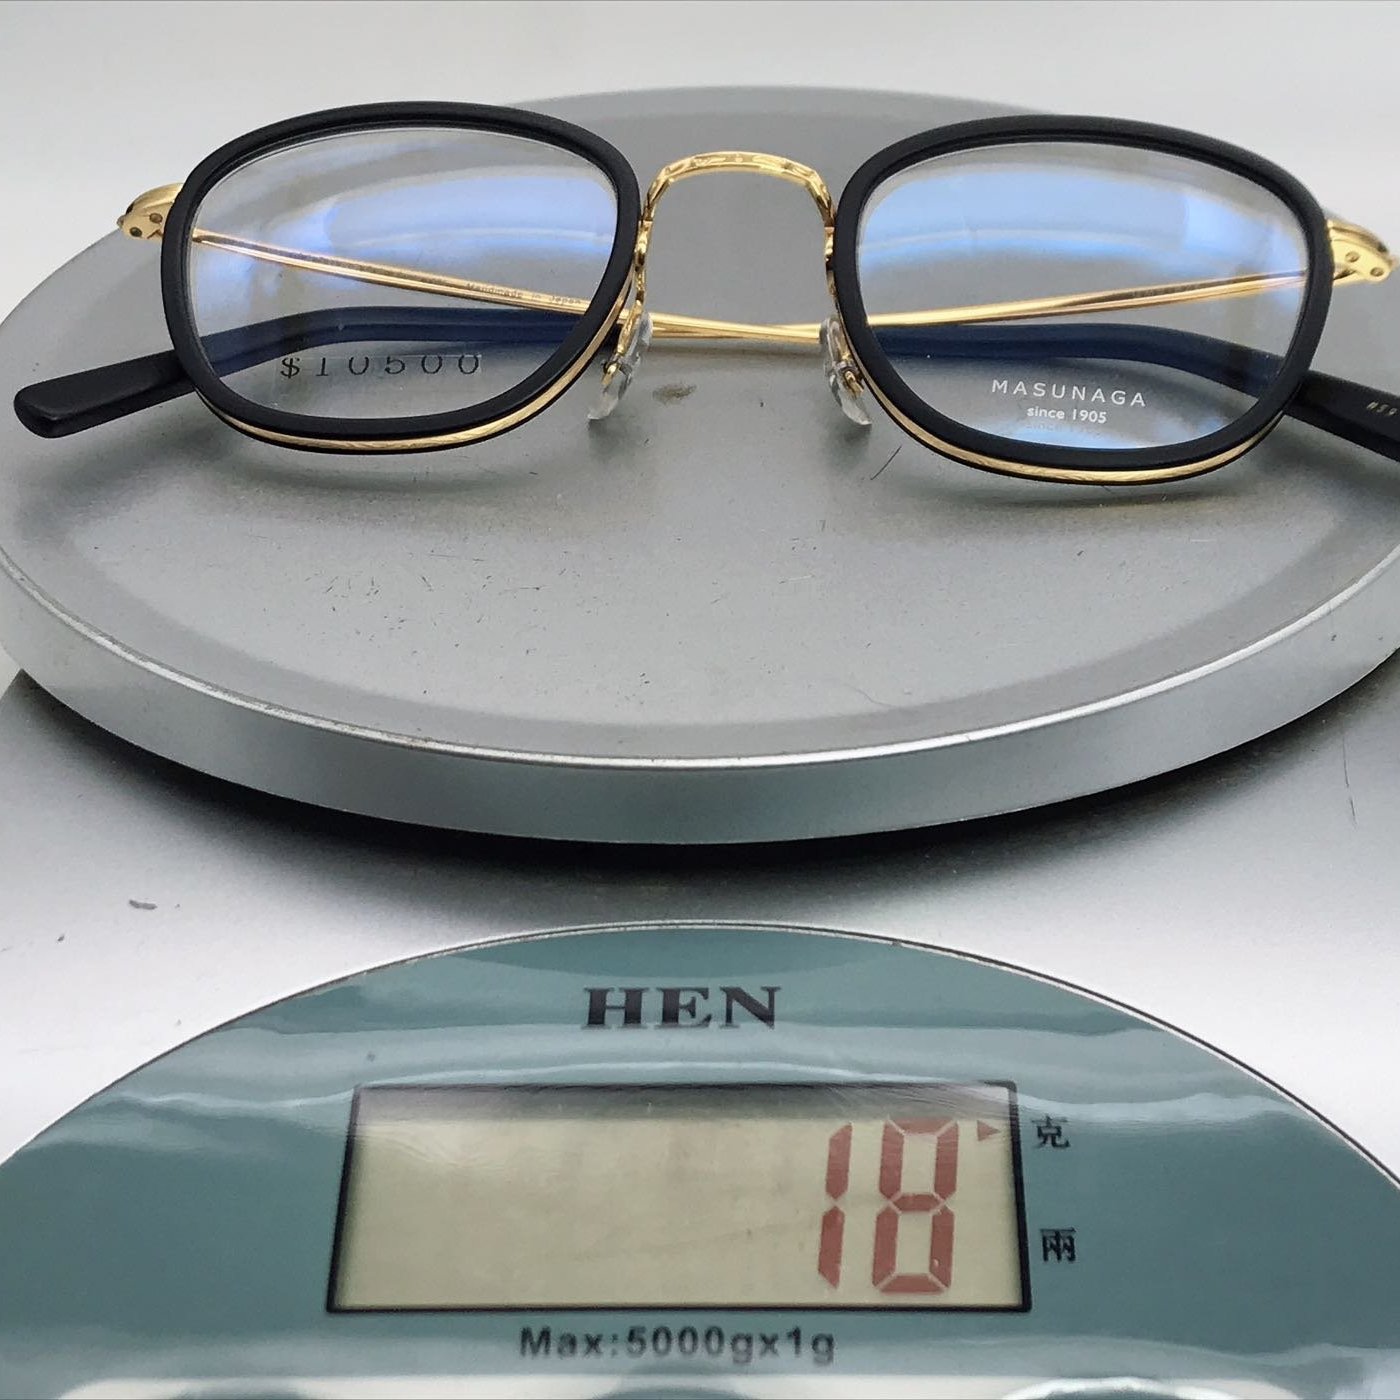 本閣眼鏡】增永眼鏡MASUNAGA 日本製手工眼鏡光學鏡框賽璐珞圓框大框 